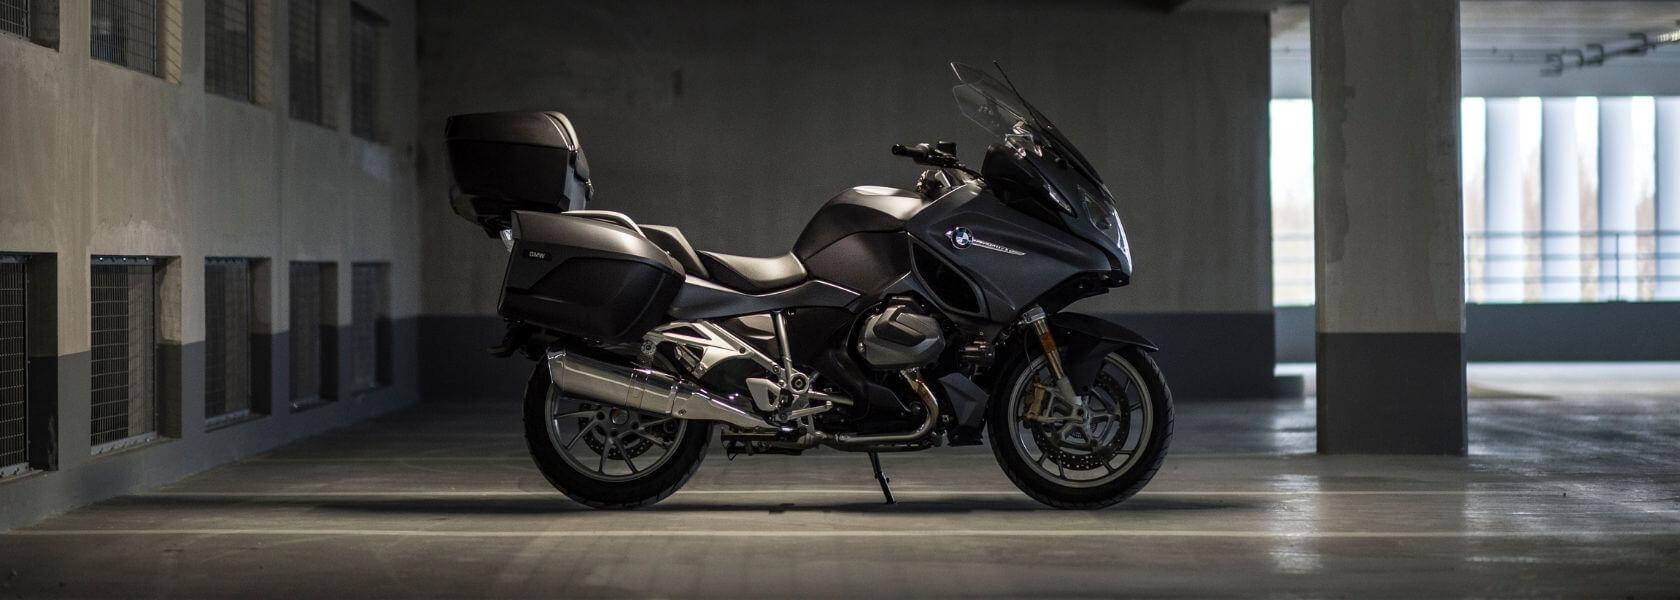 Extension de garantie BMW Motorrad